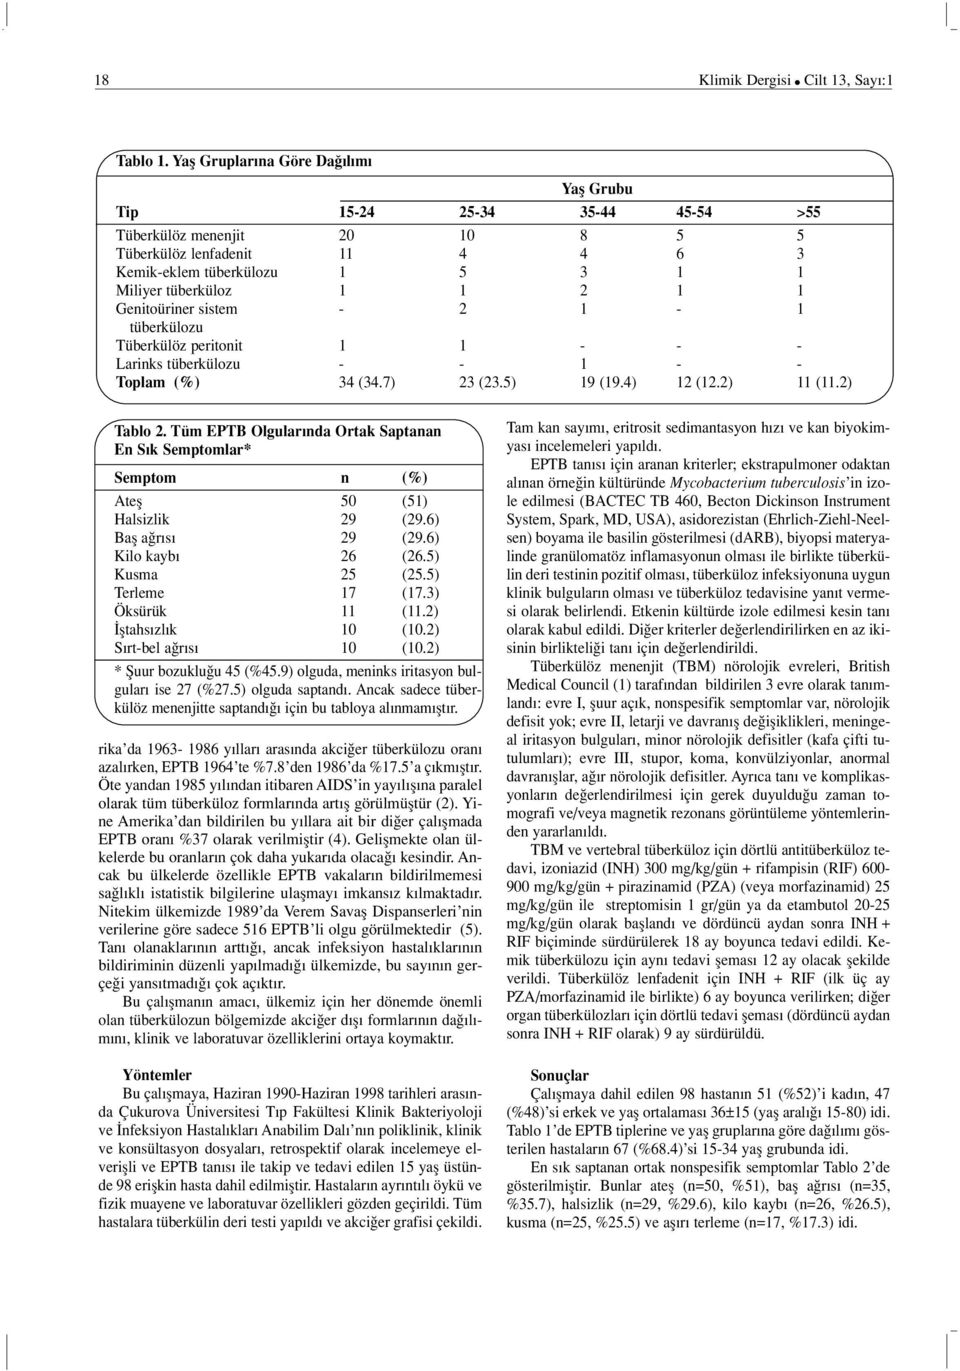 Genitoüriner sistem - 2 1-1 tüberkülozu Tüberkülöz peritonit 1 1 - - - Larinks tüberkülozu - - 1 - - Toplam (%) 34 (34.7) 23 (23.5) 19 (19.4) 12 (12.2) 11 (11.2) Tablo 2.